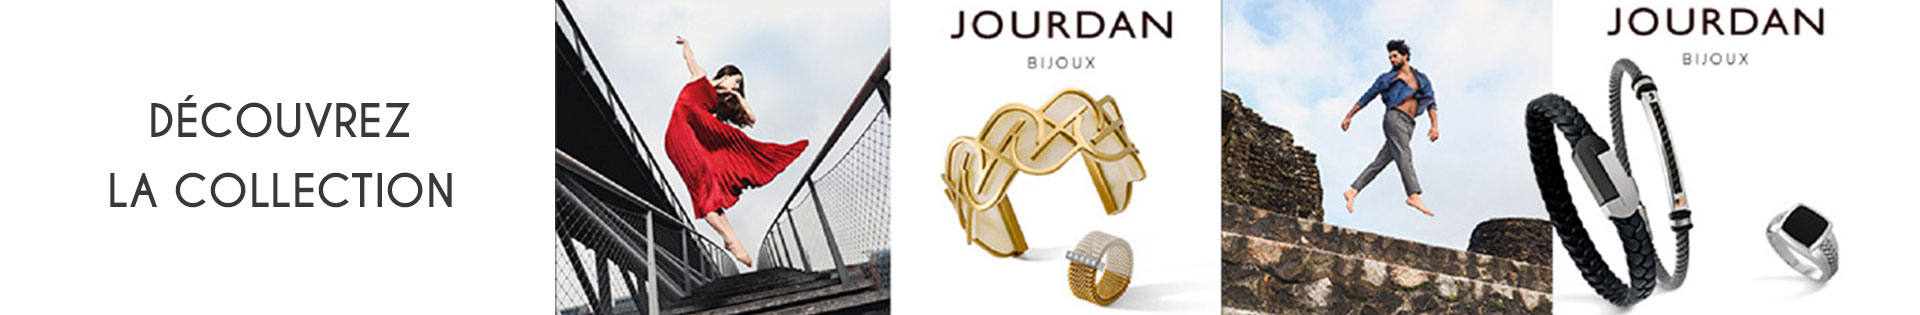 Marques de bijoux - Jourdan Bijoux